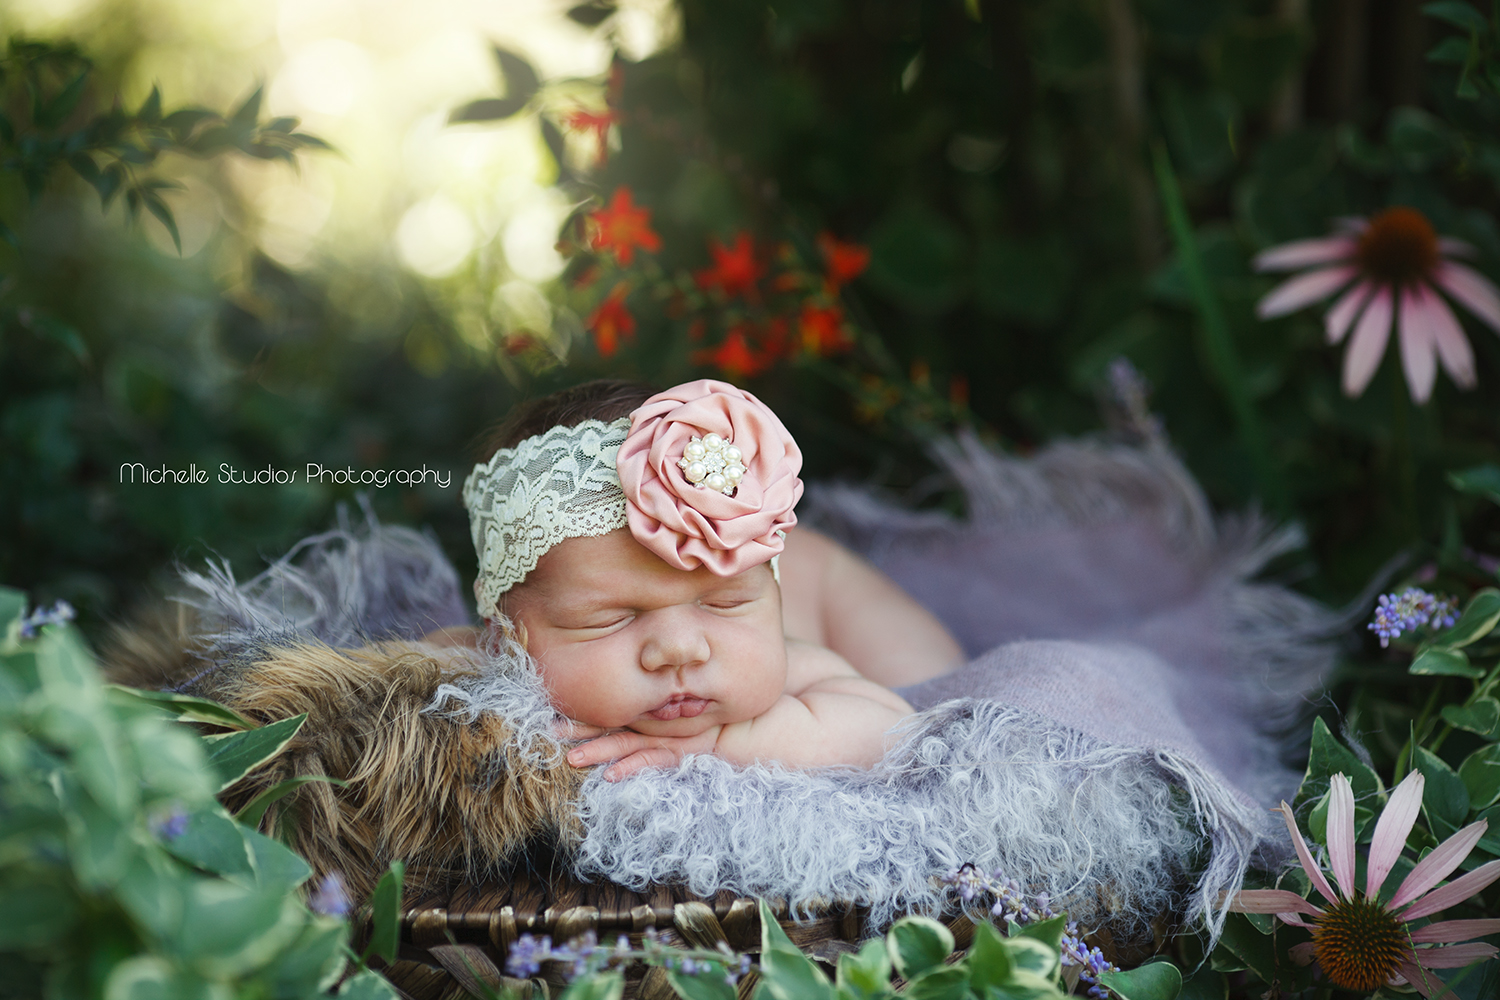 Raleigh newborn in fairy garden with cute cheeks